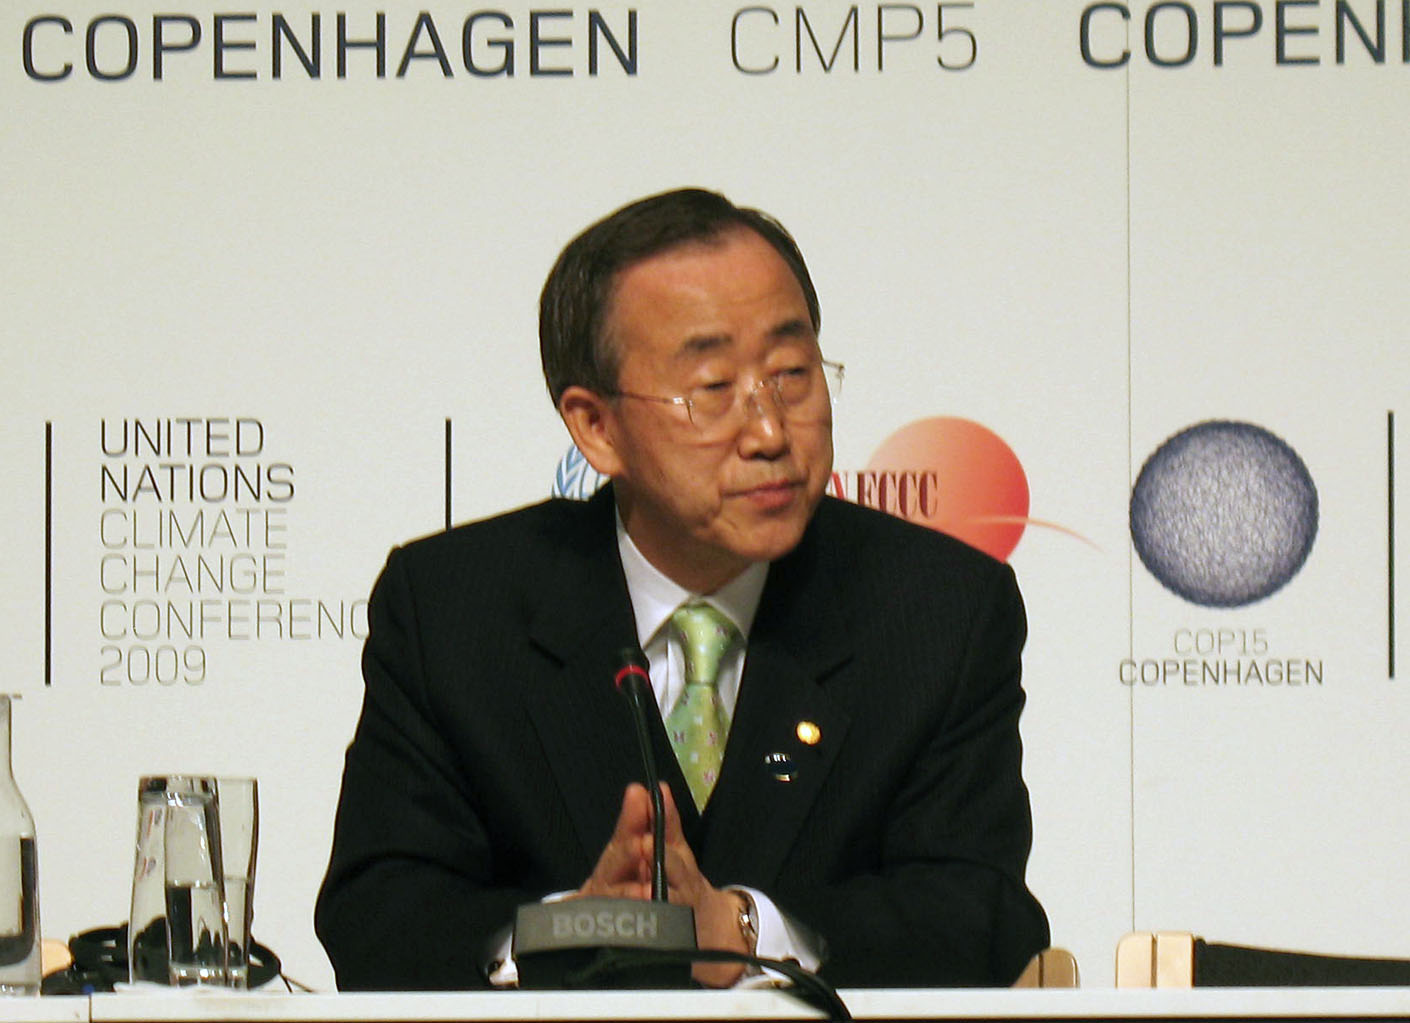 UN Secretary General Ban-Ki Moon